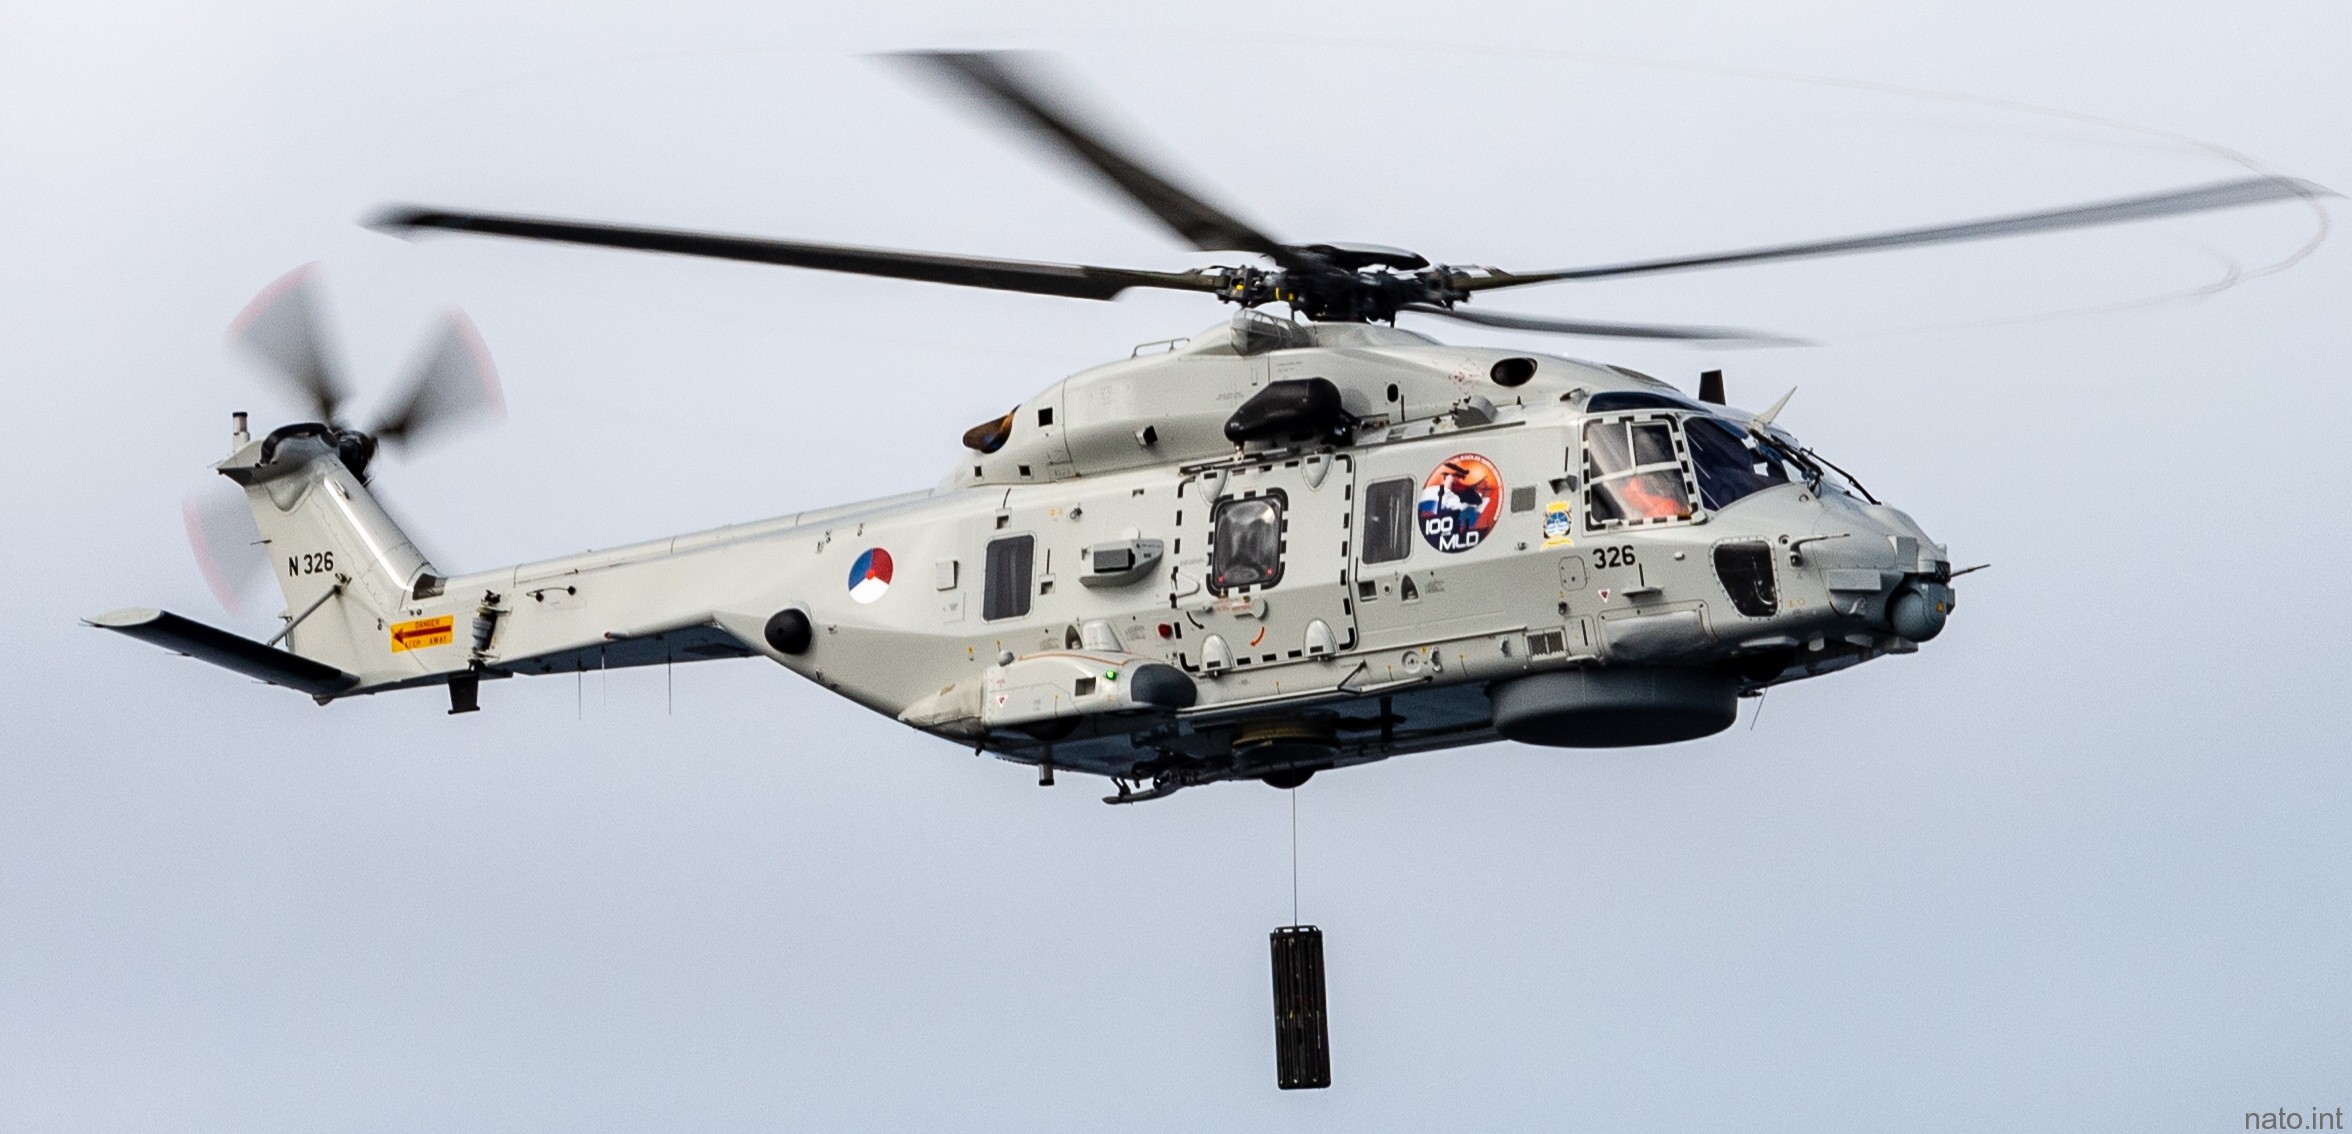 nh90 nfh helicopter royal netherlands navy koninklijke marine n-326 07